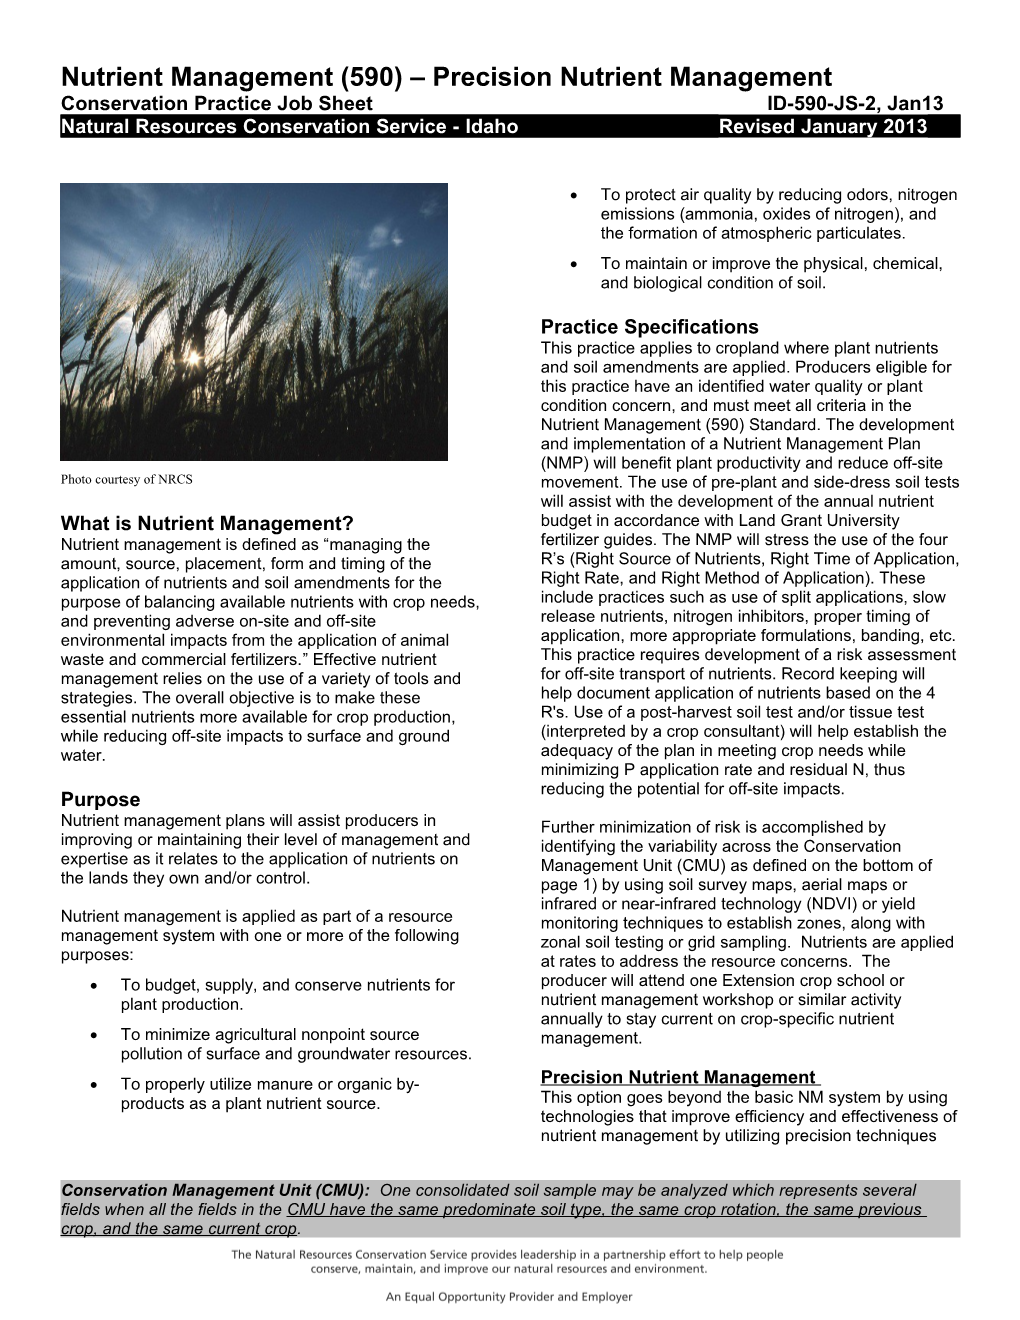 Nutrient Management (590) Precision Nutrient Management